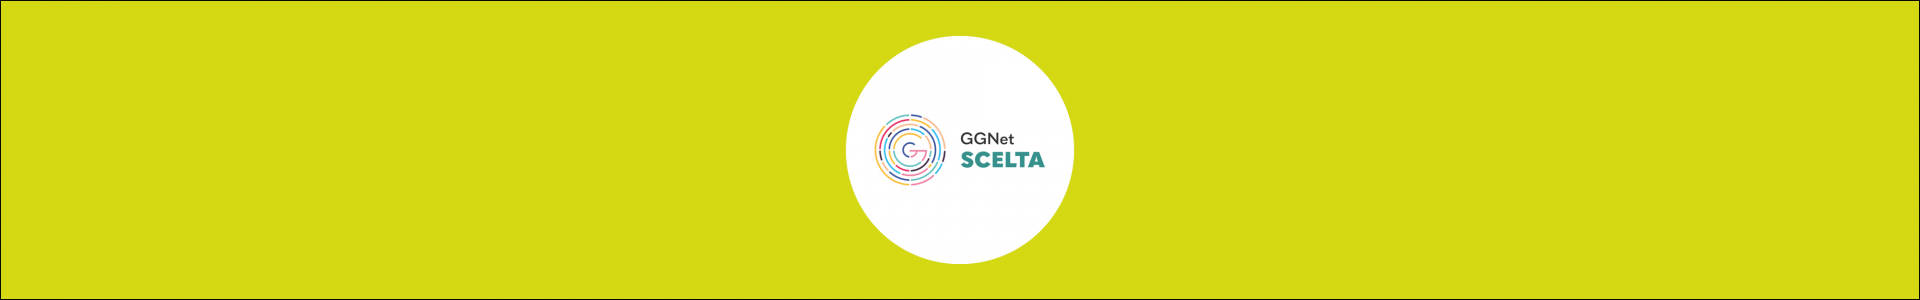 GGNet Scelta